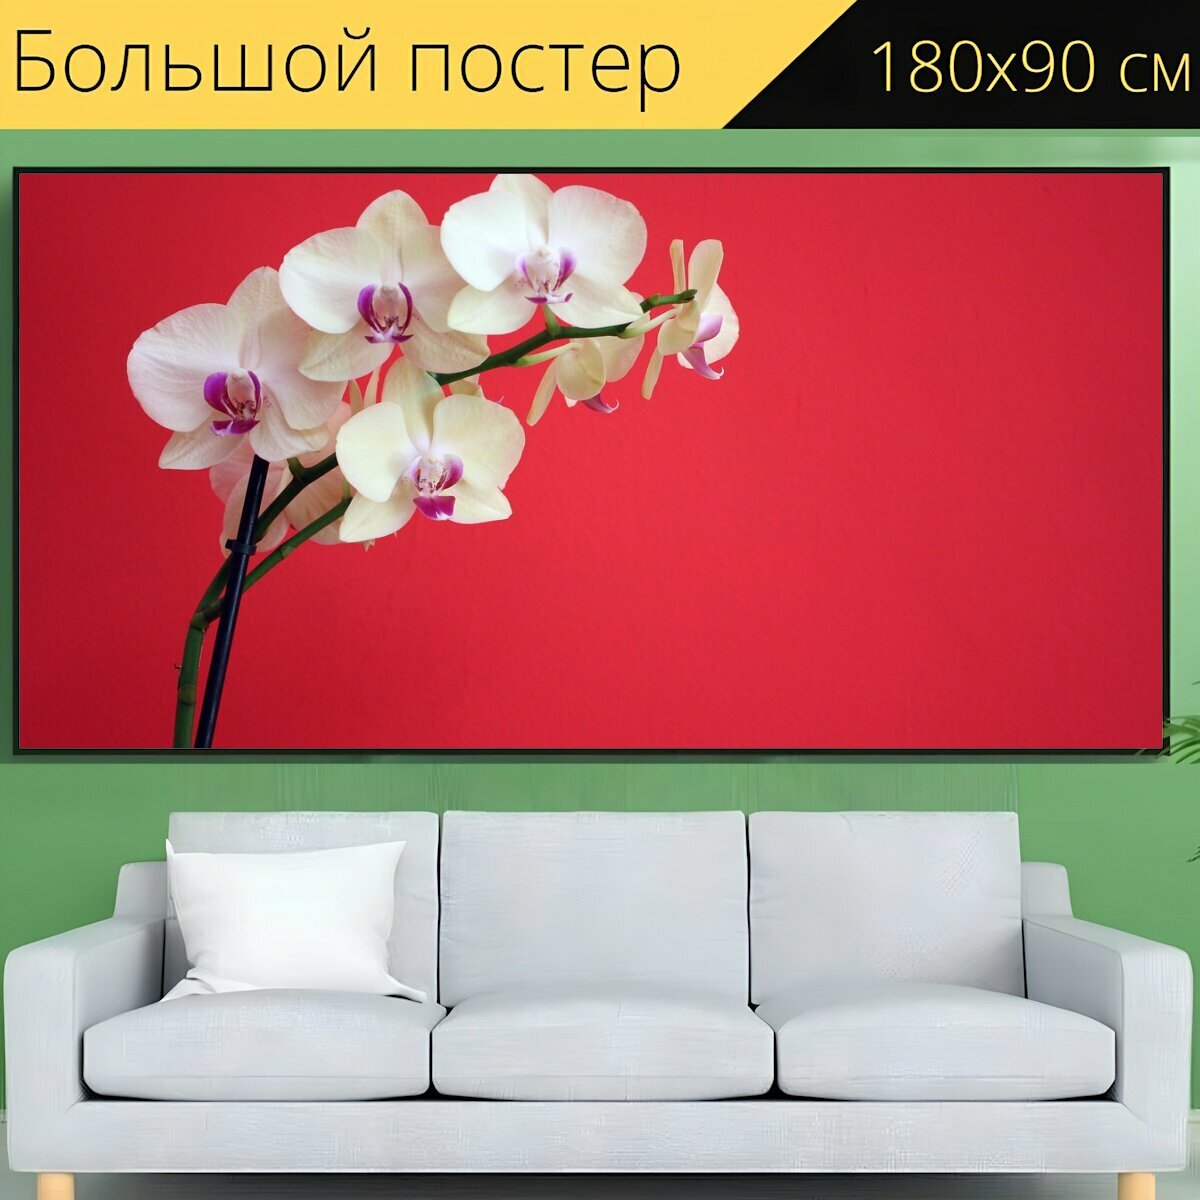 Большой постер "Орхидея, цветок, завод" 180 x 90 см. для интерьера